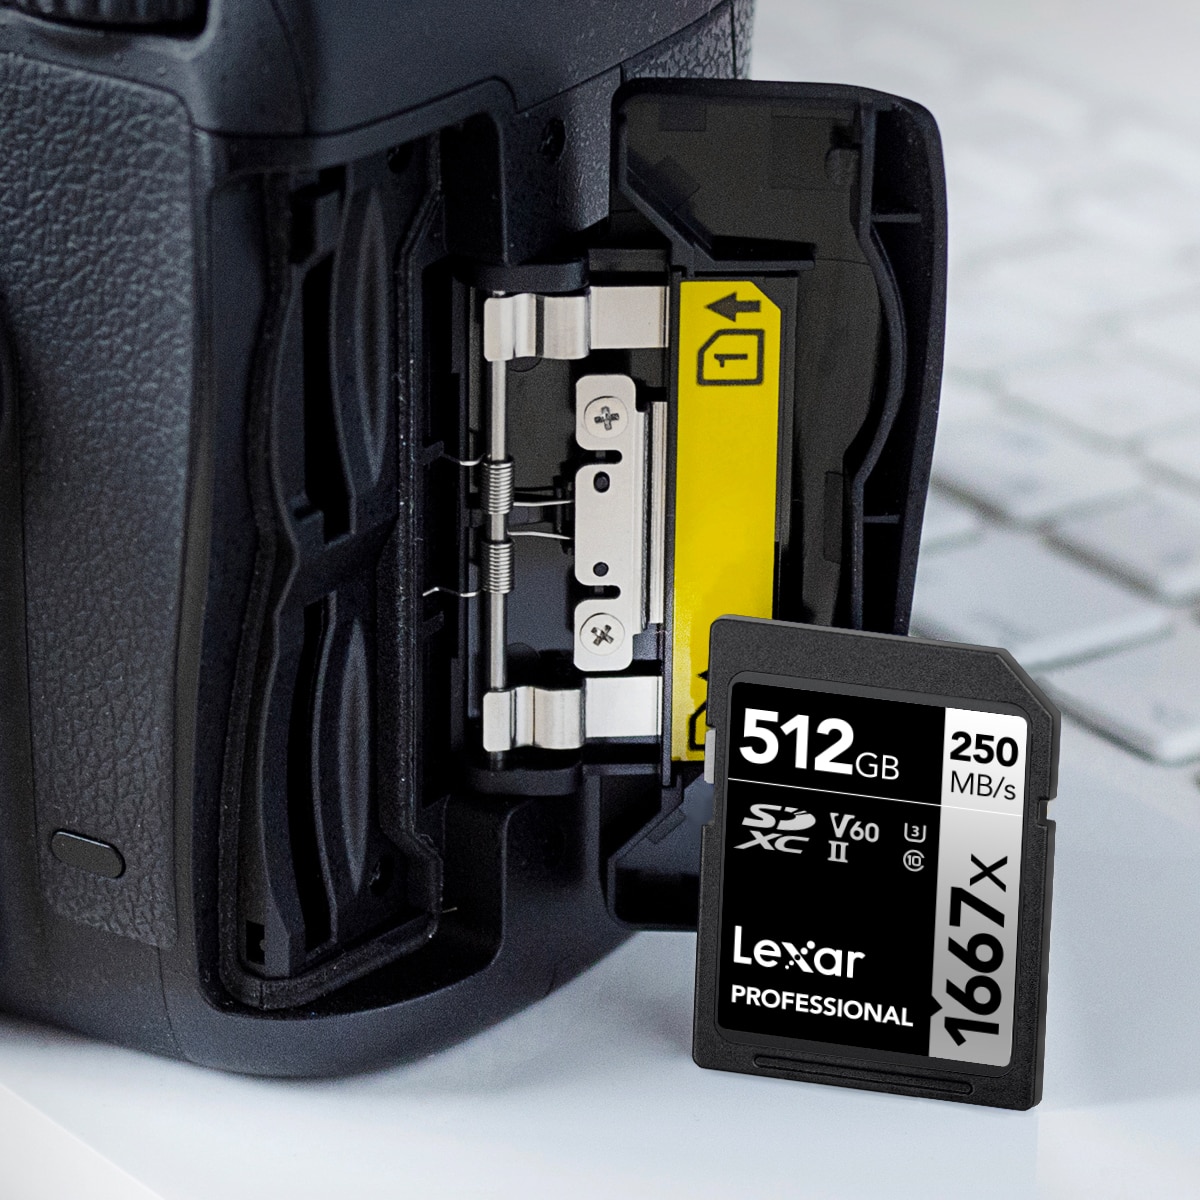 Lexar 雷克沙SD記憶卡、USB隨身碟等儲存高品質影像的產品，皆經過品質實驗室廣泛且嚴謹的測試，確保其性能、品質、相容性及可靠性。